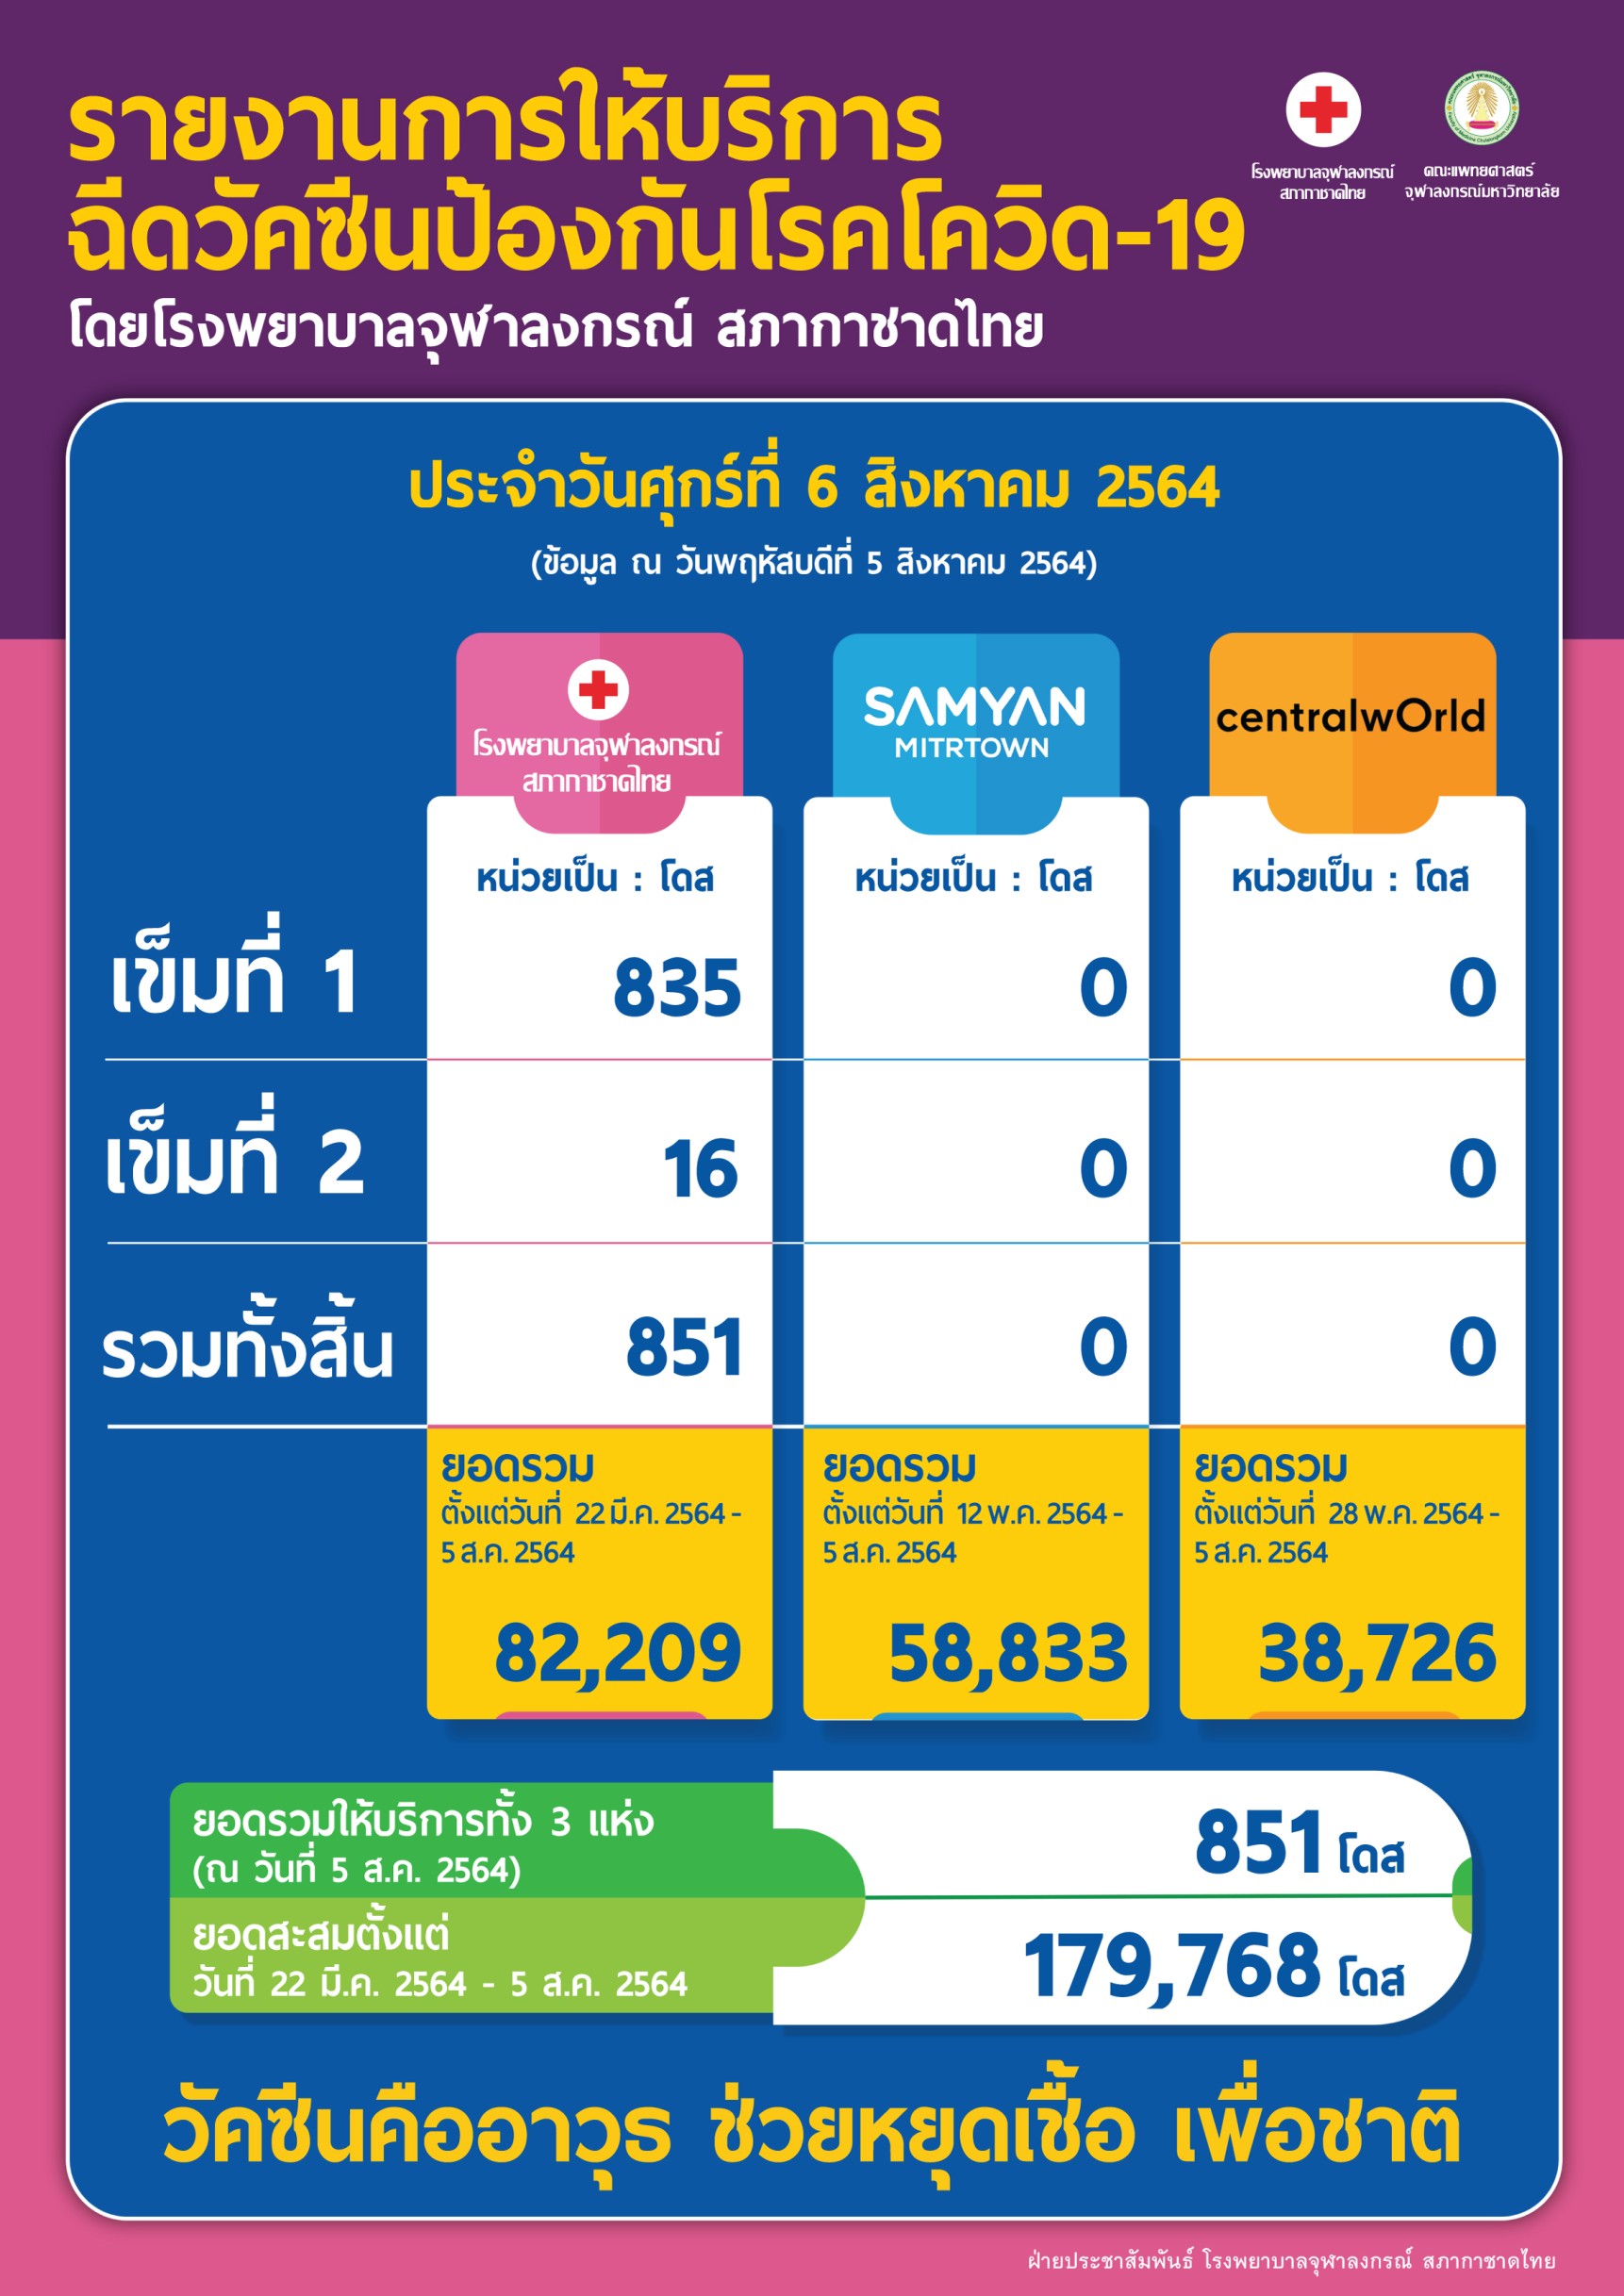 รายงานการให้บริการฉีดวัคซีนป้องกันโรคโควิด-19 โดยโรงพยาบาลจุฬาลงกรณ์ สภากาชาดไทย ประจำวันศุกร์ที่ 6 สิงหาคม 2564